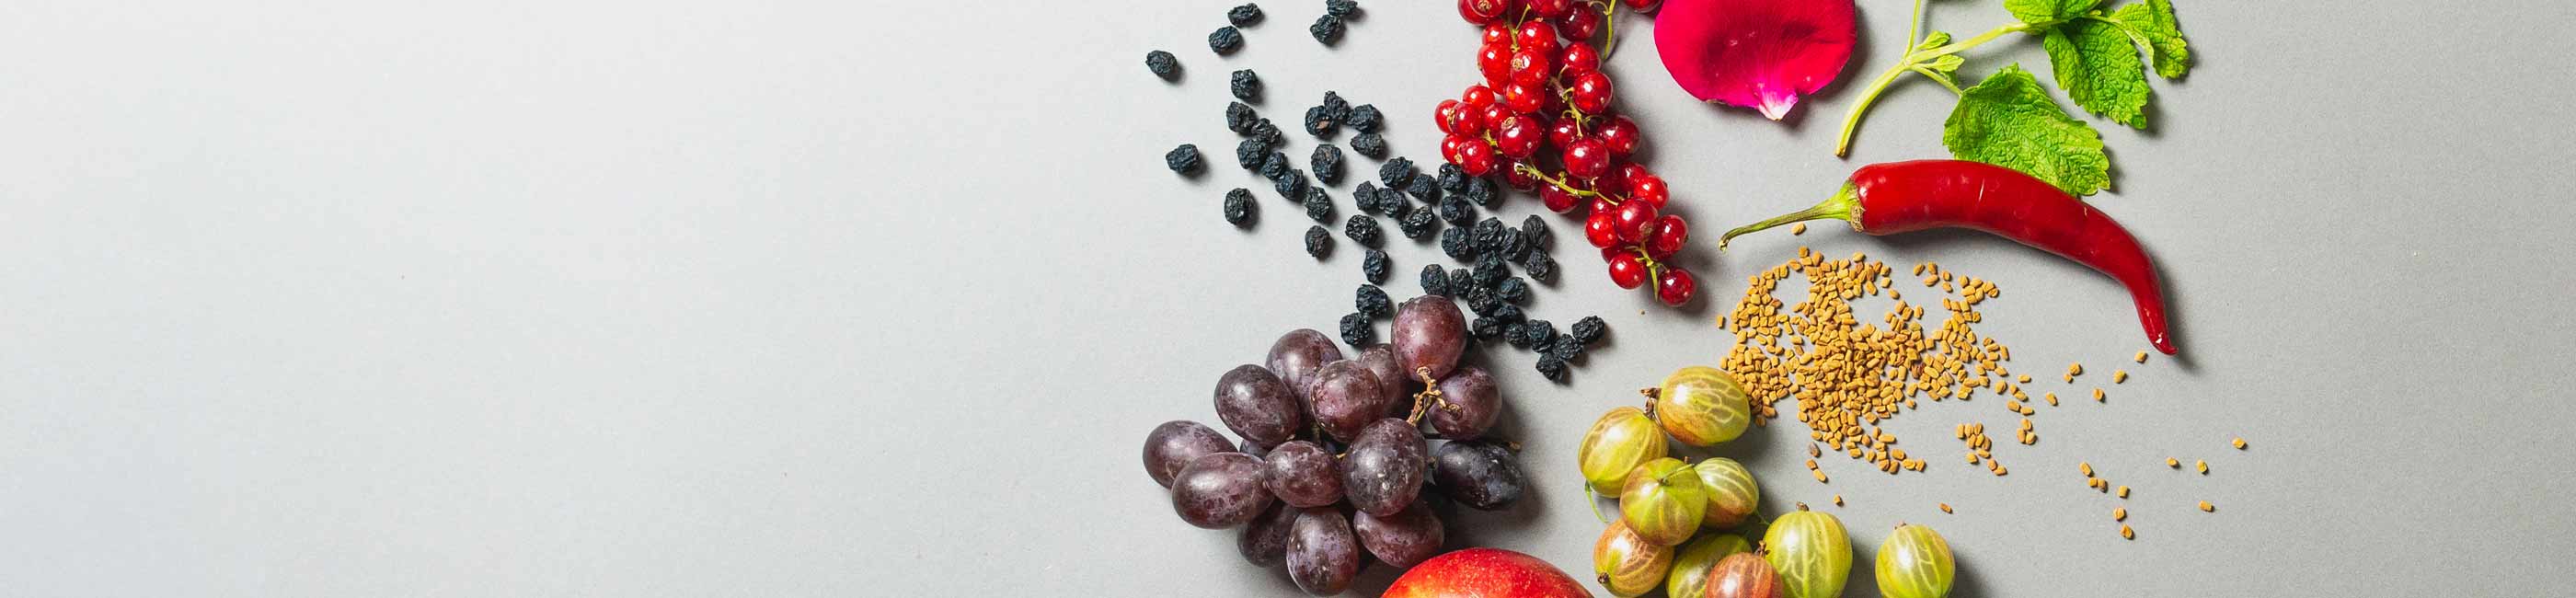 bio-aperitif zutaten stillleben mit trauben, beeren, rosen, melisse, chili, bockshornklee und stachelbeeren